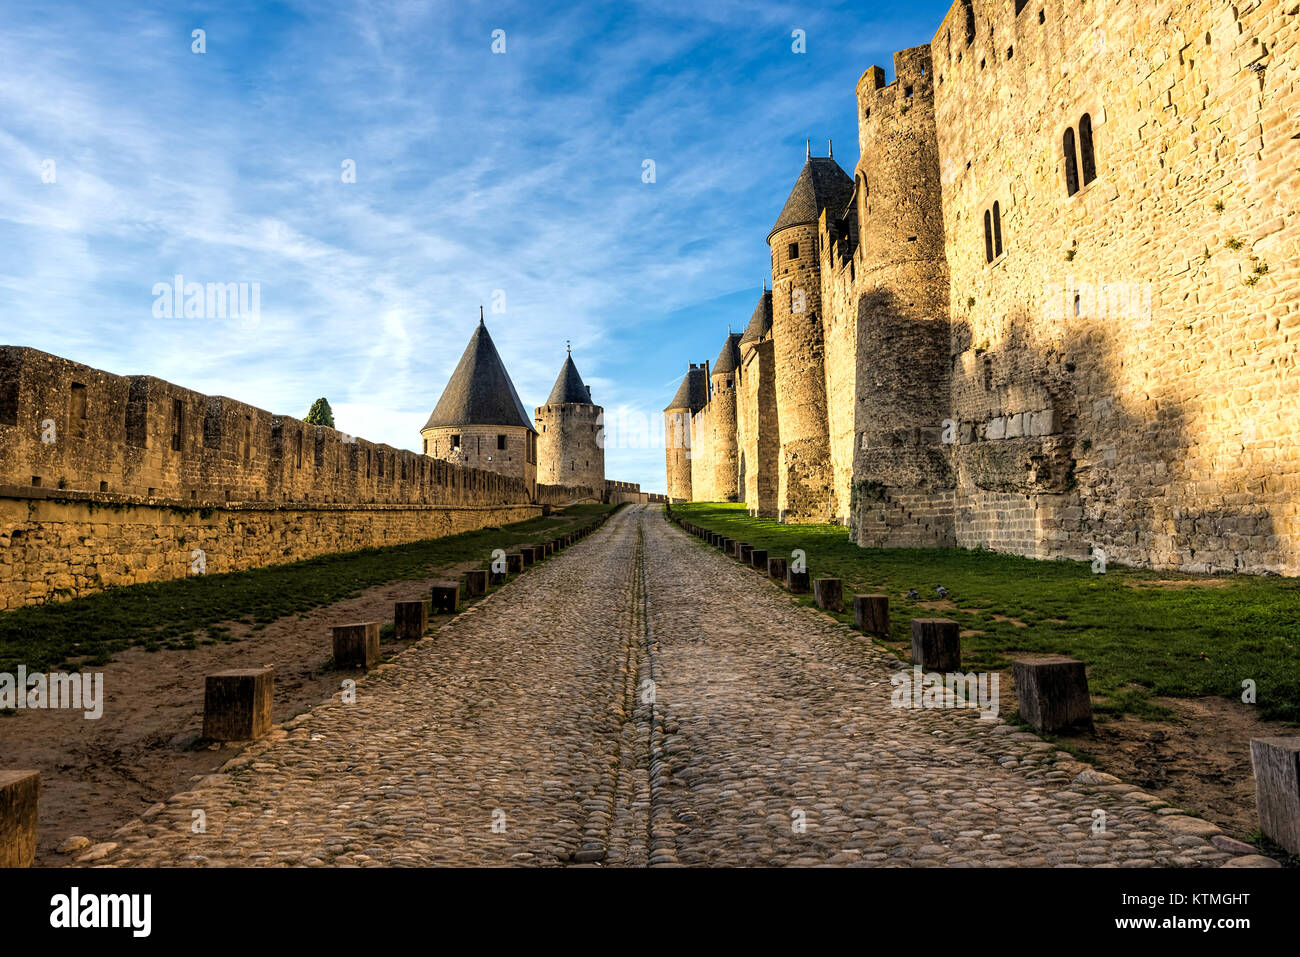 La rue antique entre les murs d'une fortification médiévale sous un ciel bleu nuageux Banque D'Images